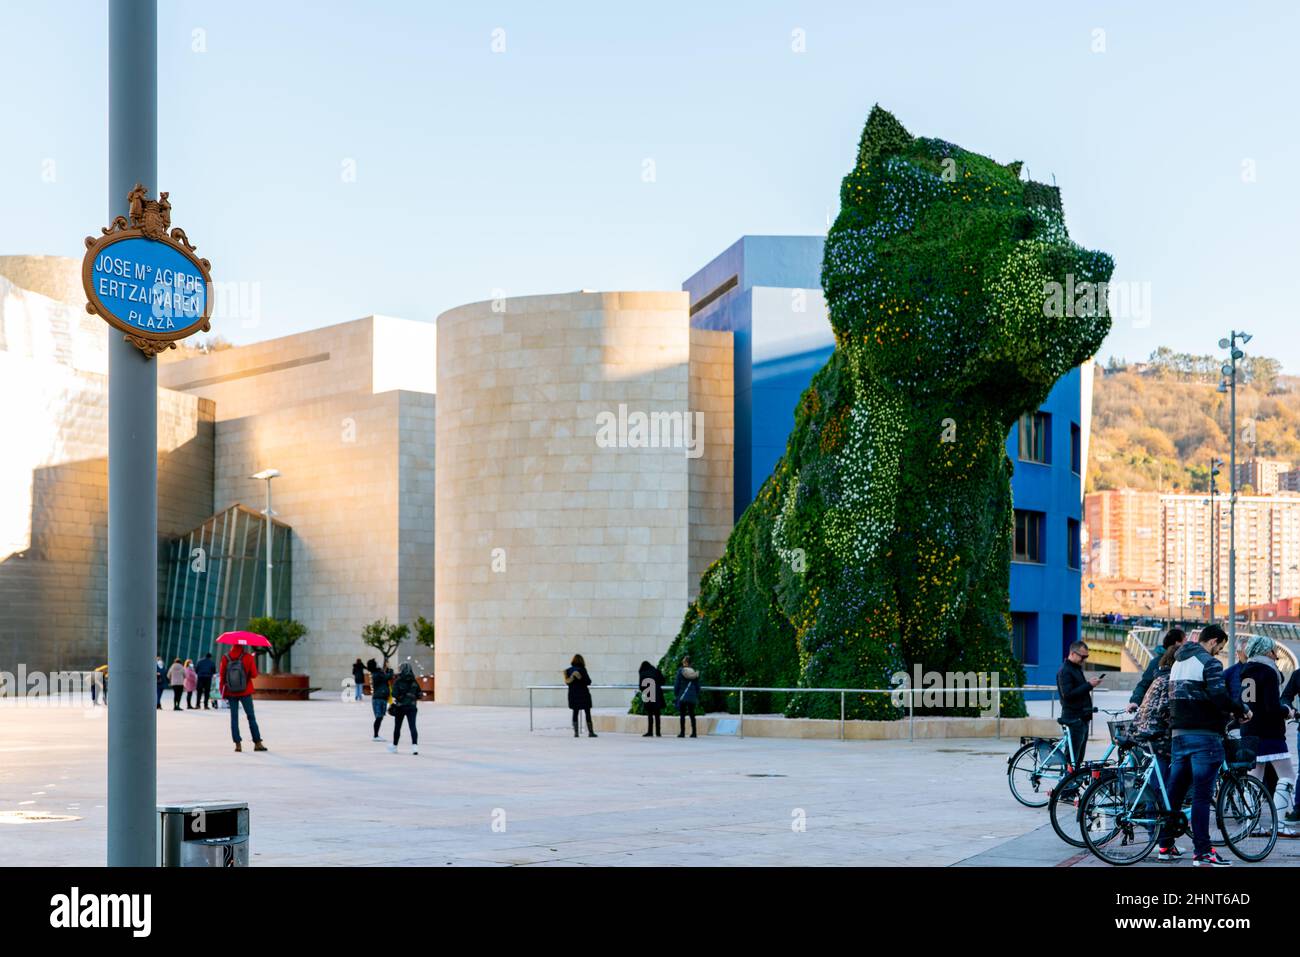 BILBAO, ESPAGNE-18 DÉCEMBRE 2021 : Puppy tient une garde au musée Guggenheim de Bilbao, Gascogne, pays basque, Espagne. Repères. Sculpture de chien de l'artiste Jeff Koons. La plus grande sculpture de fleurs au monde. Banque D'Images